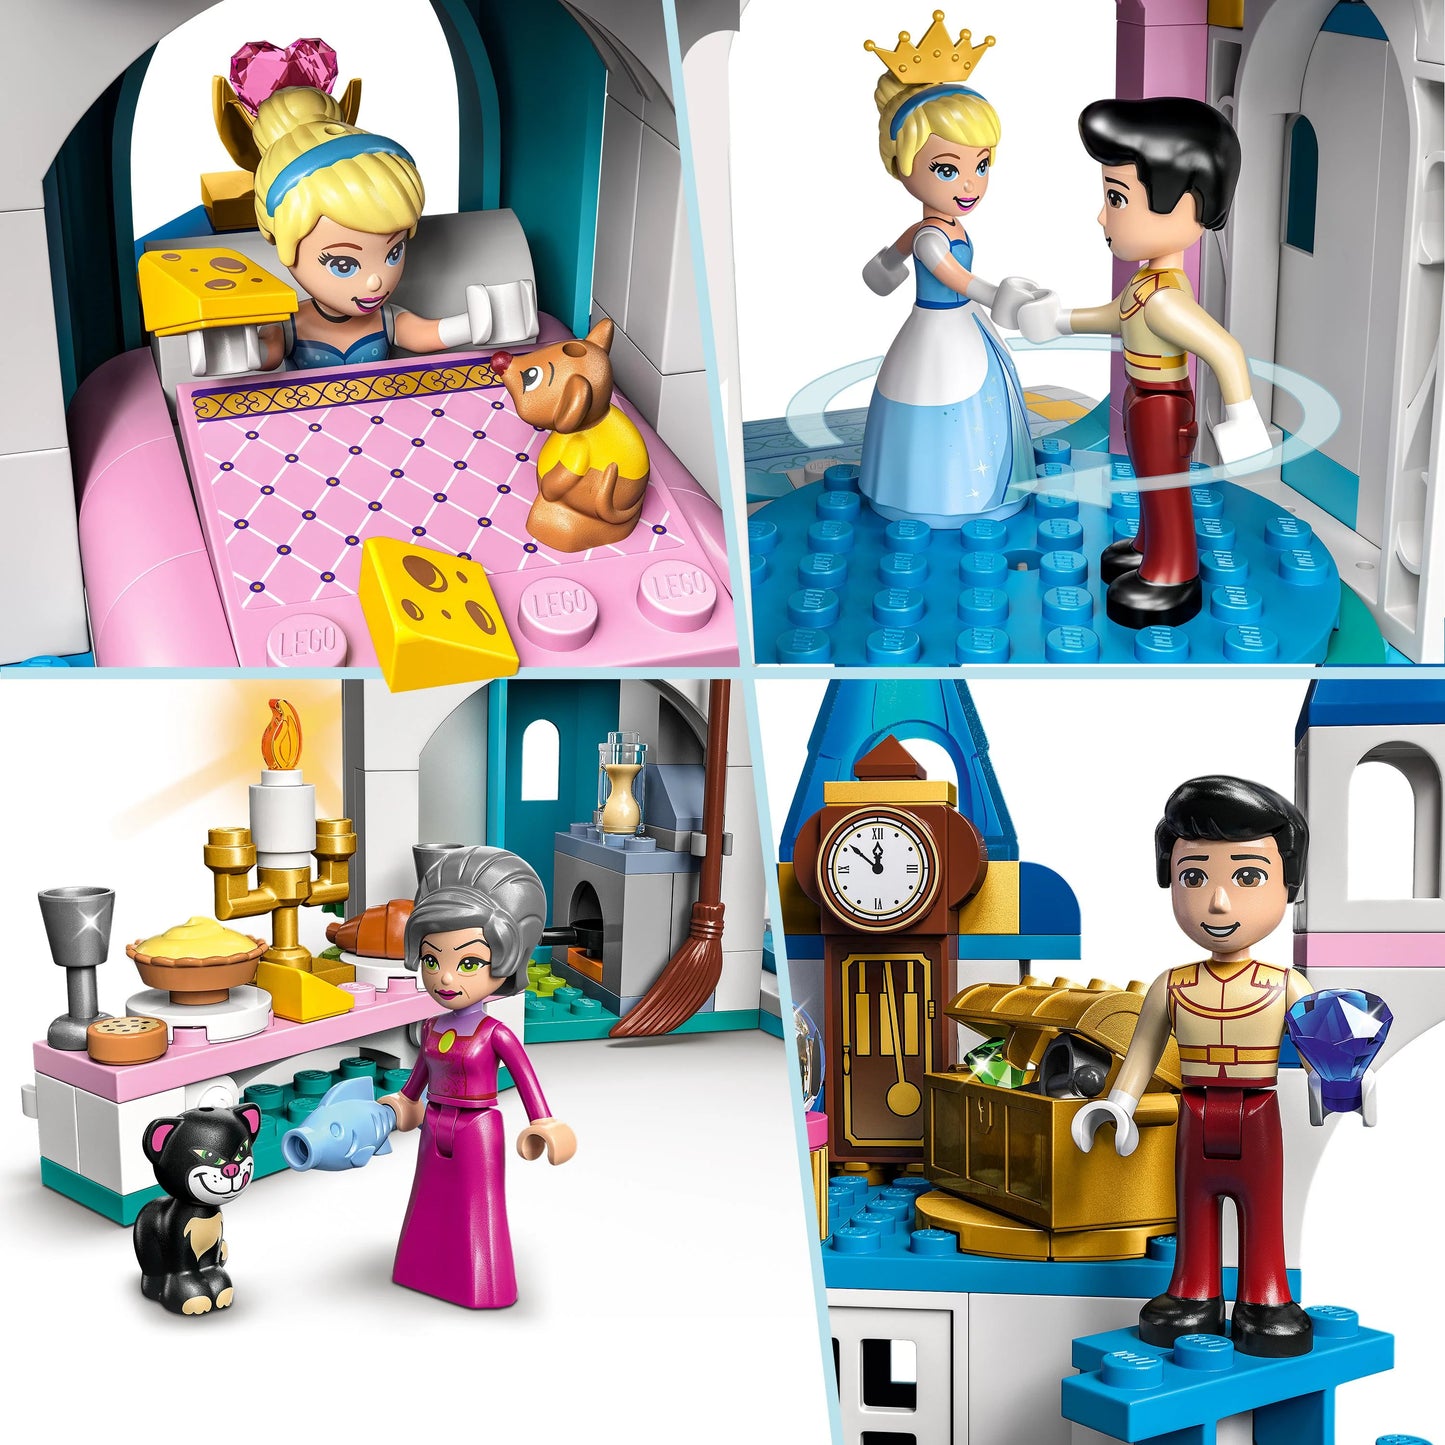 Het kasteel van Assepoester en de knappe prins-LEGO Disney